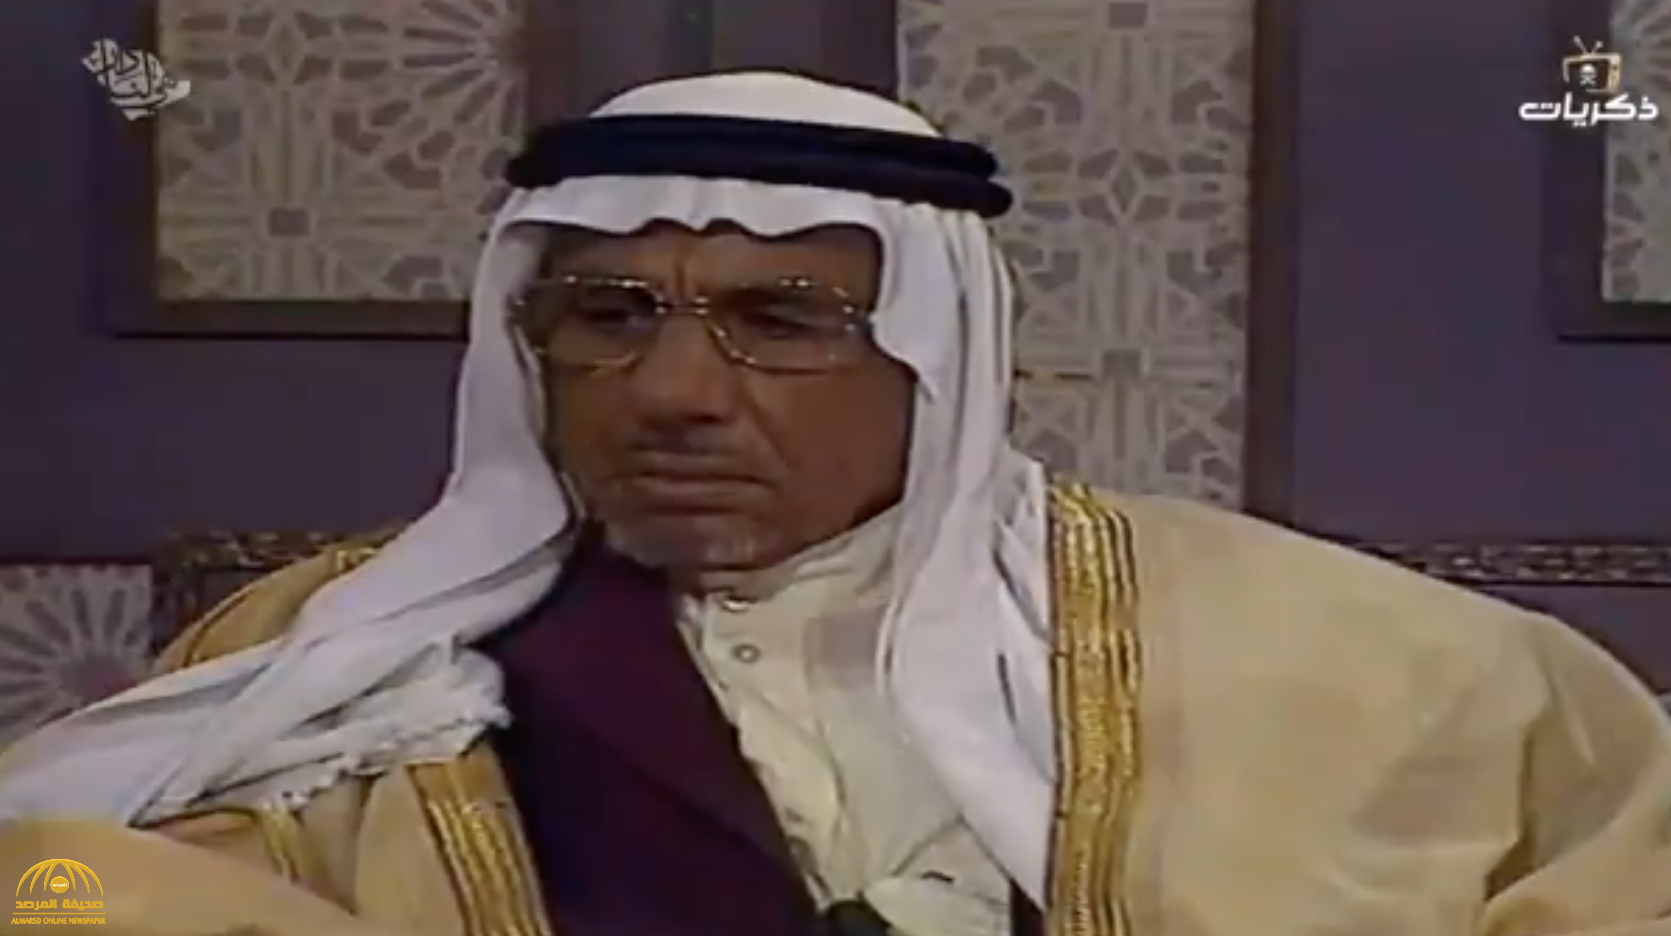 شاهد: فيديو نادر للأمير "سعود بن هذلول" يحسم الجدل بشأن عدد من دخلوا الرياض مع الملك عبدالعزيز